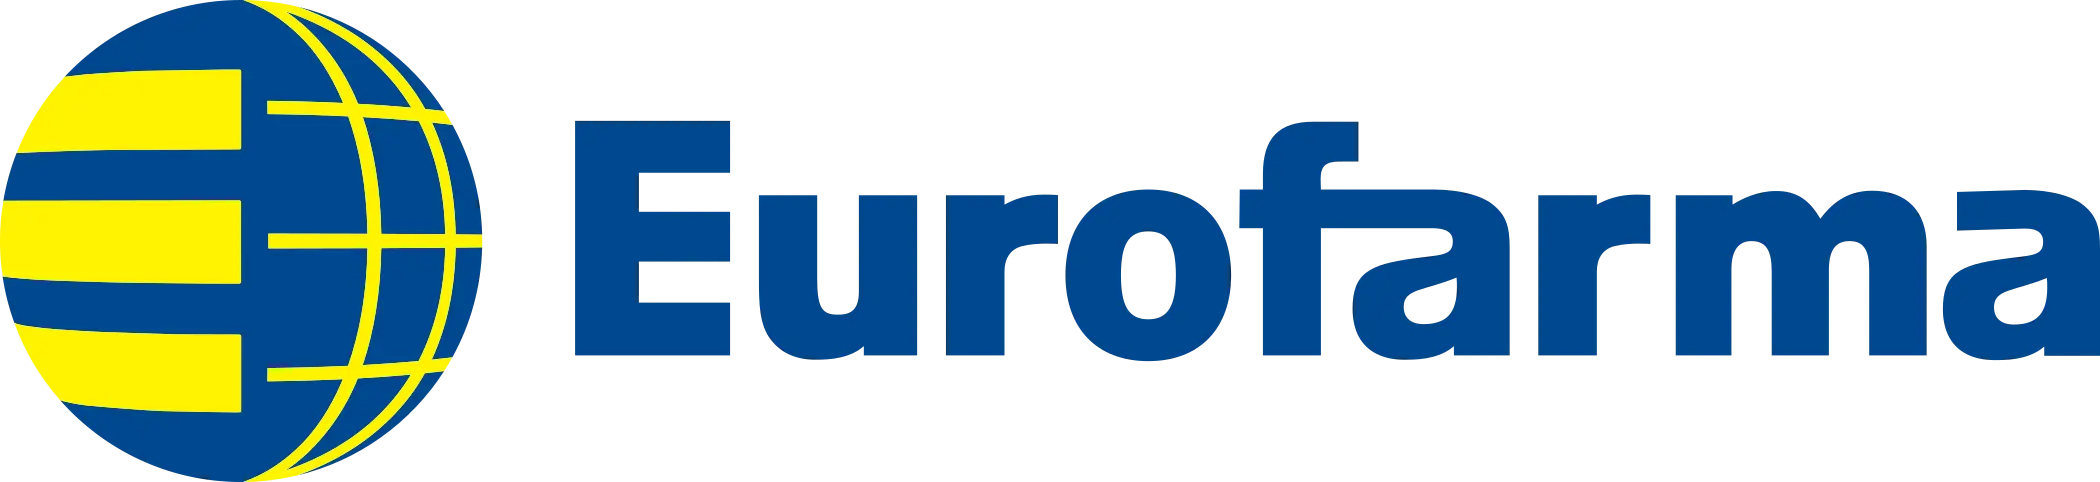 eurofarma-logo-2